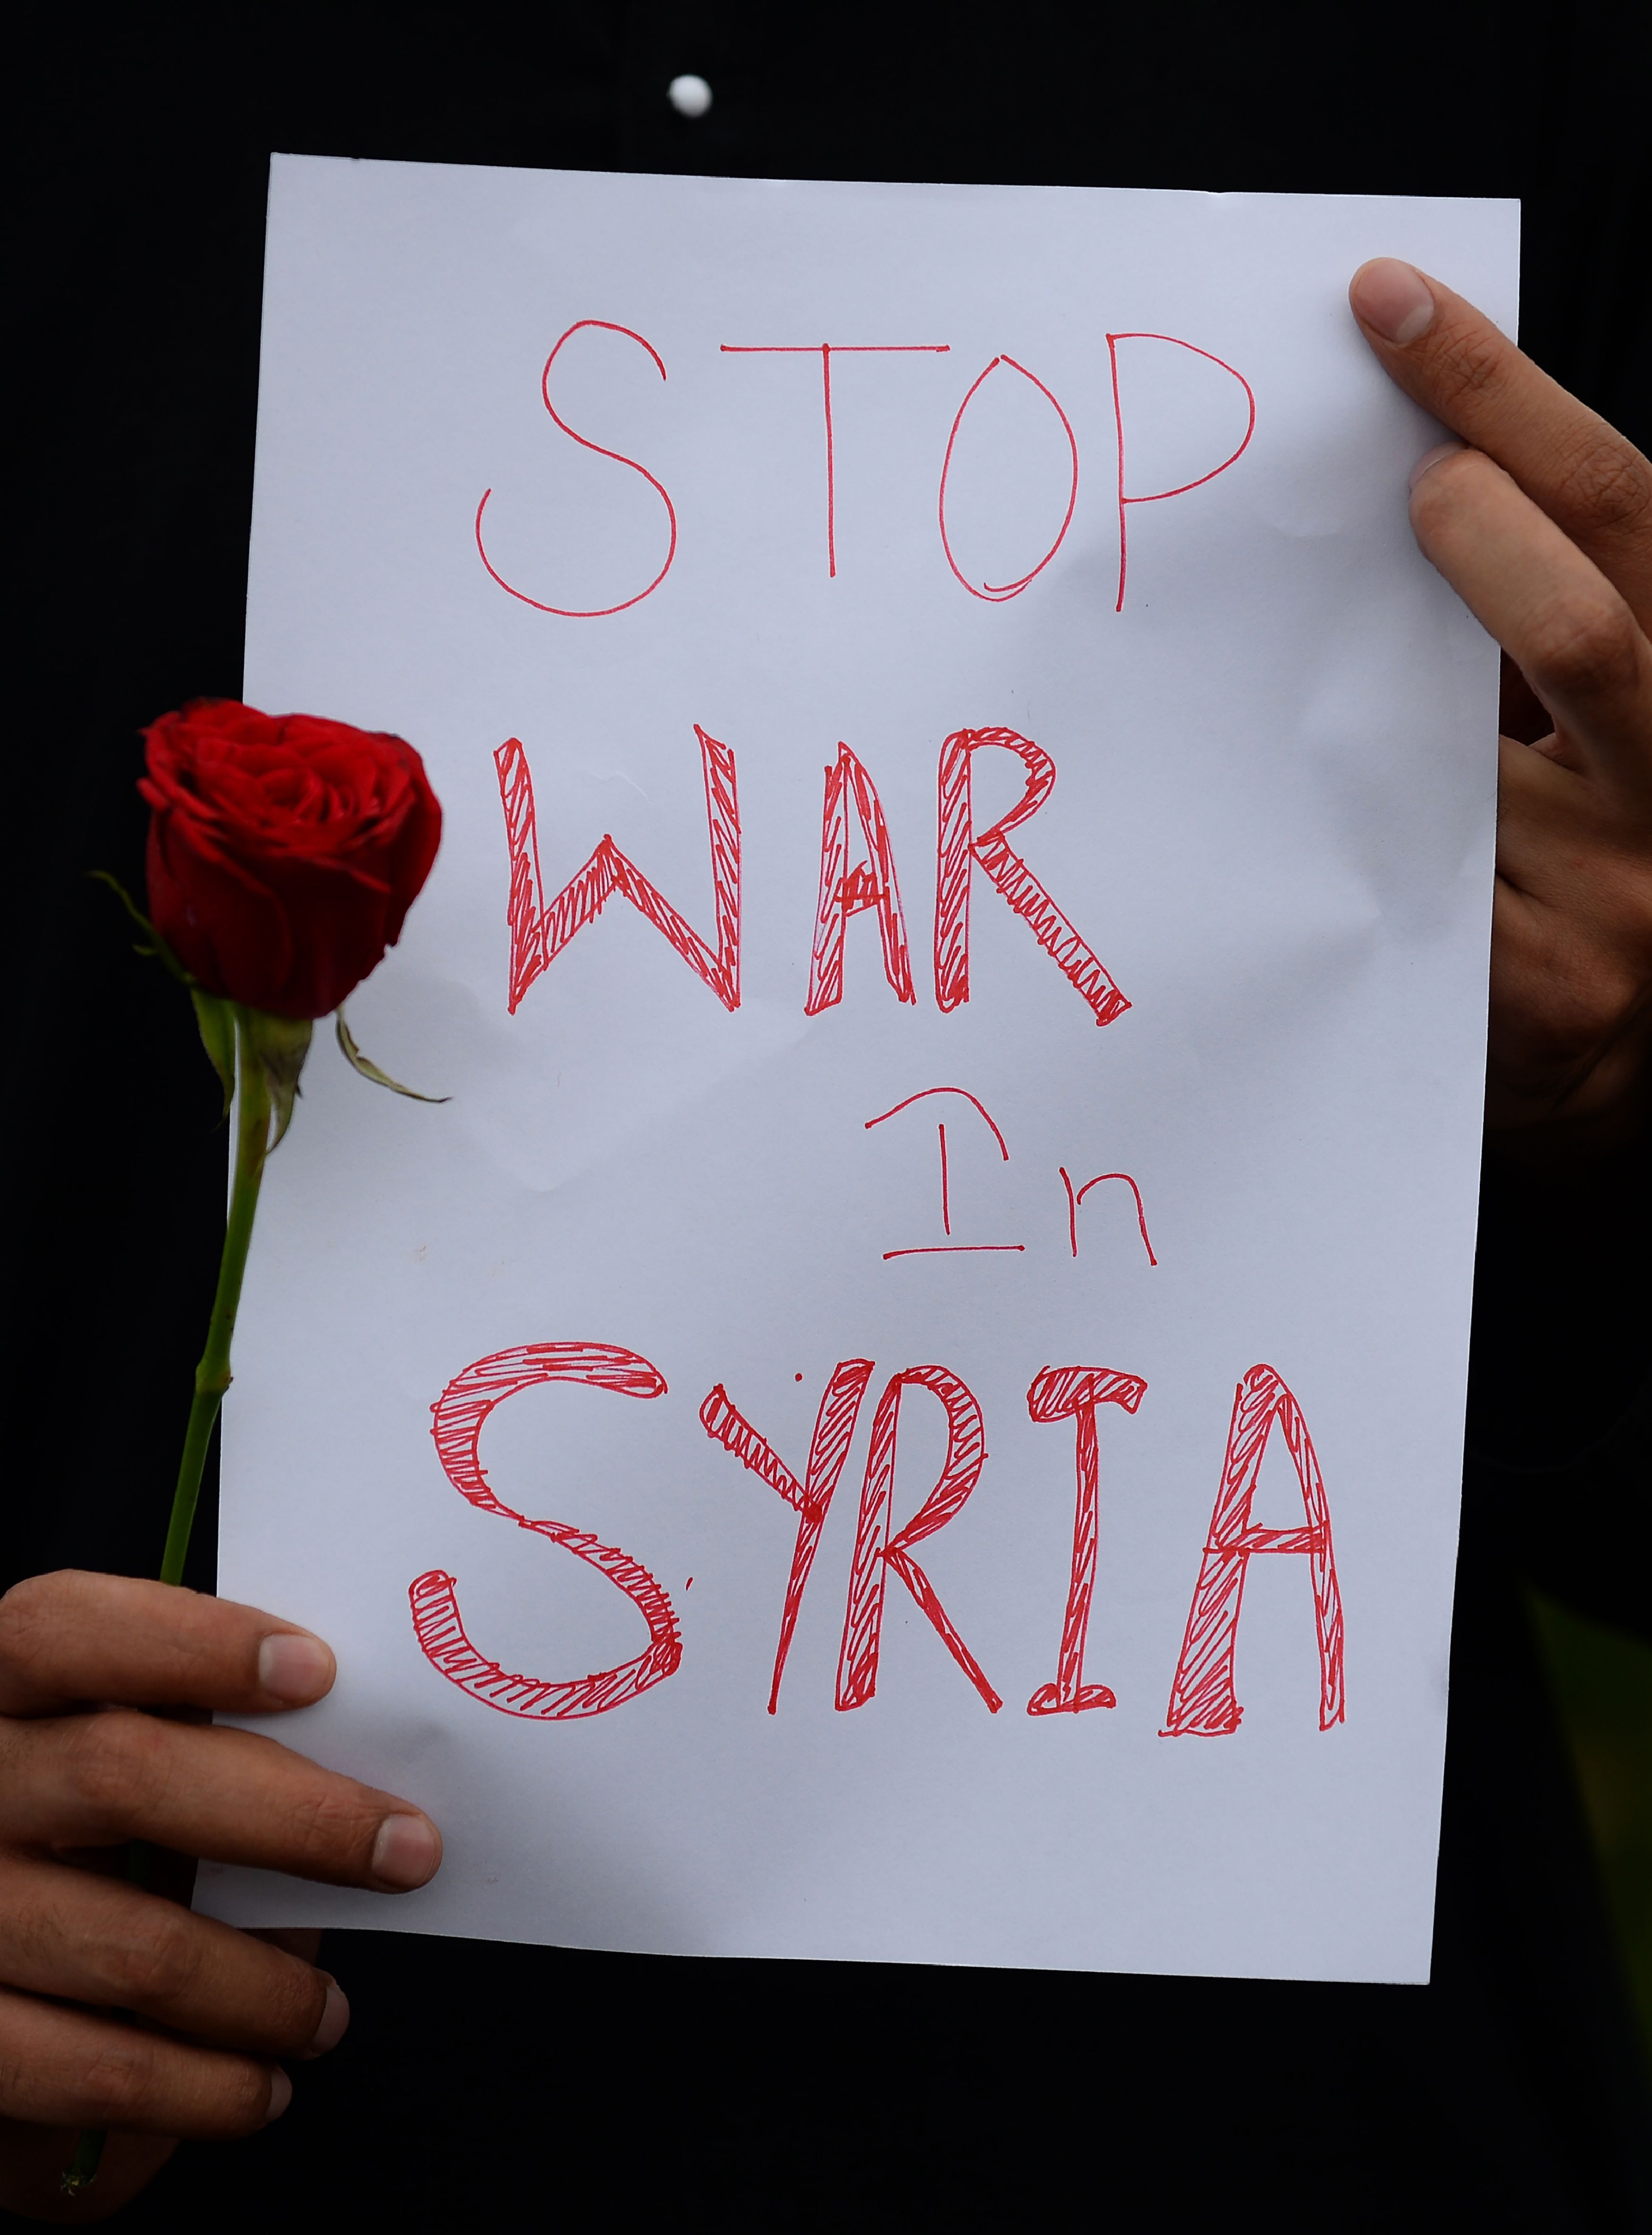 لافتات فى الهند تطالب بوقف الحرب السورية